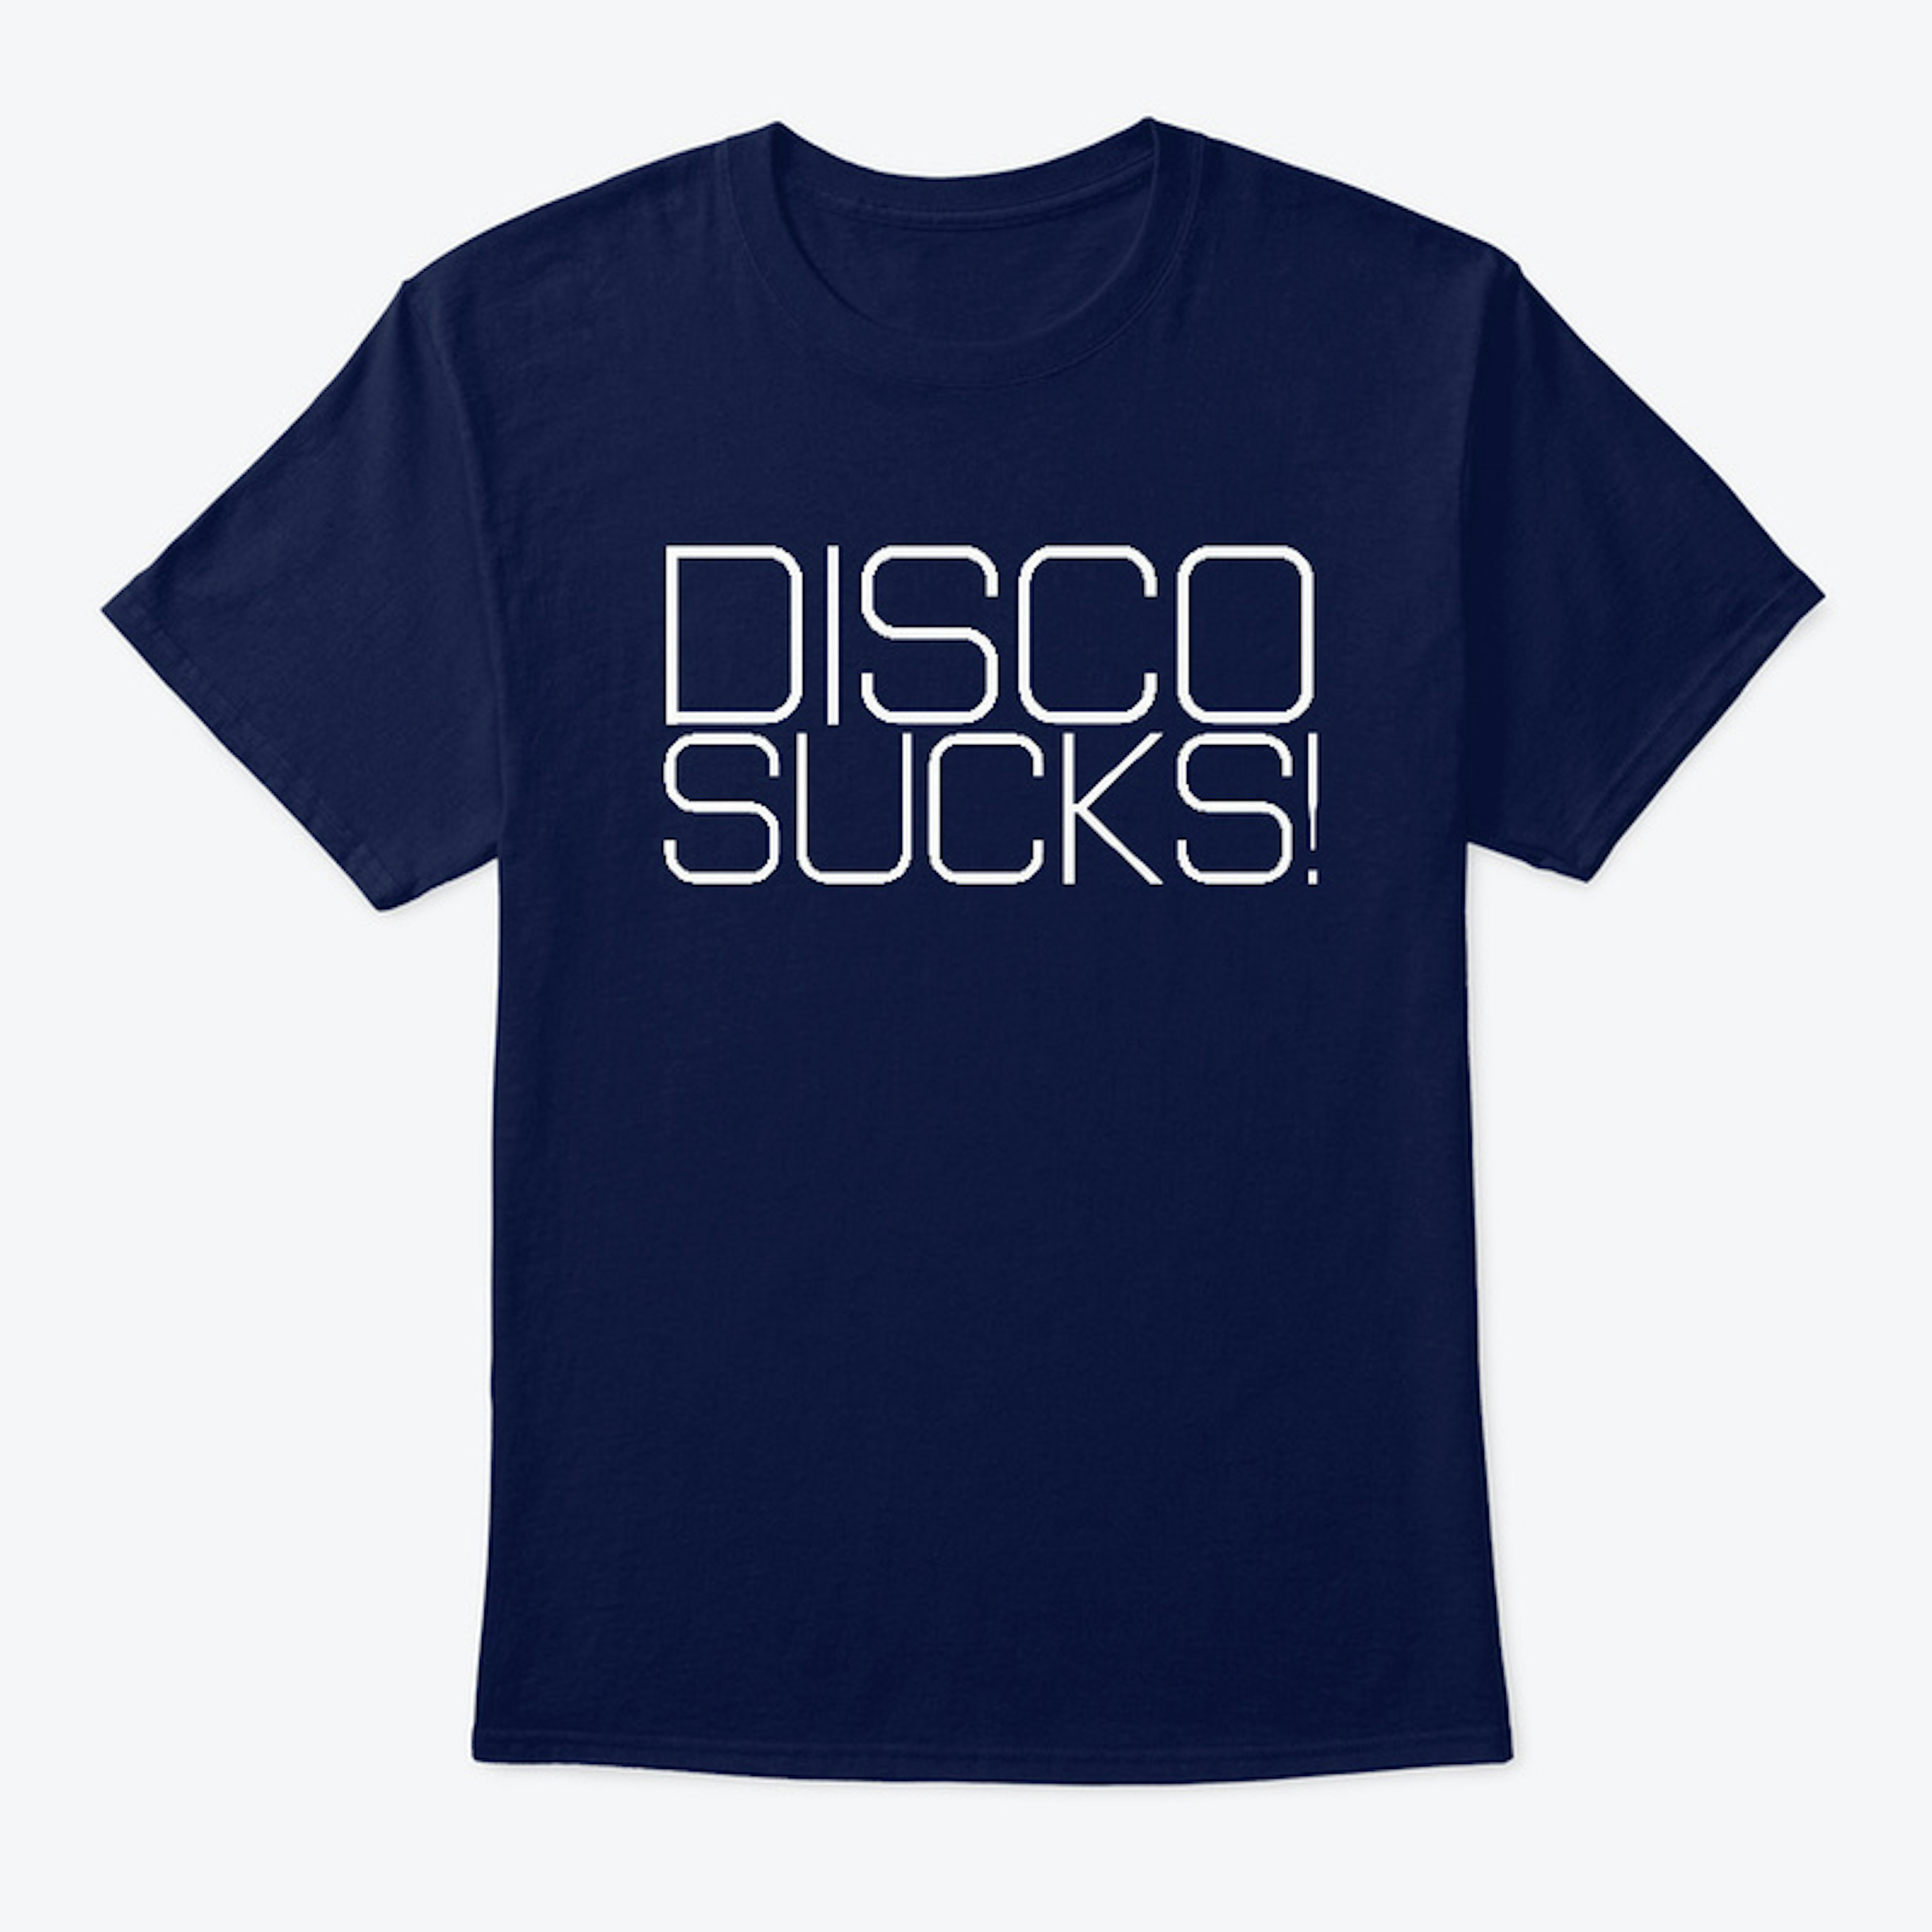 Disco sucks